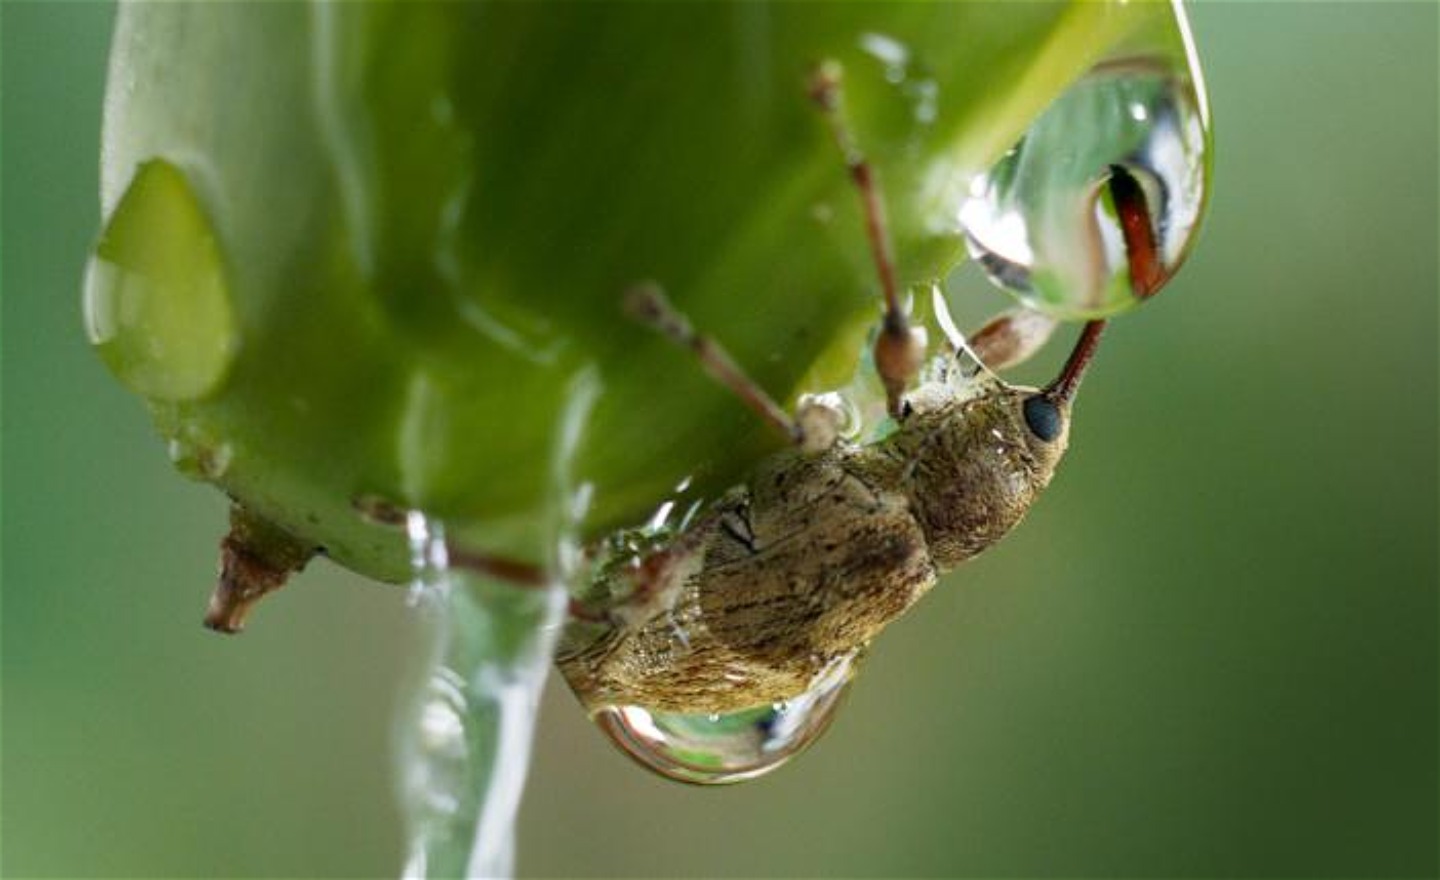 En insekt som sitter på en grön knopp har stuckit sin snabel i en vattendroppe.